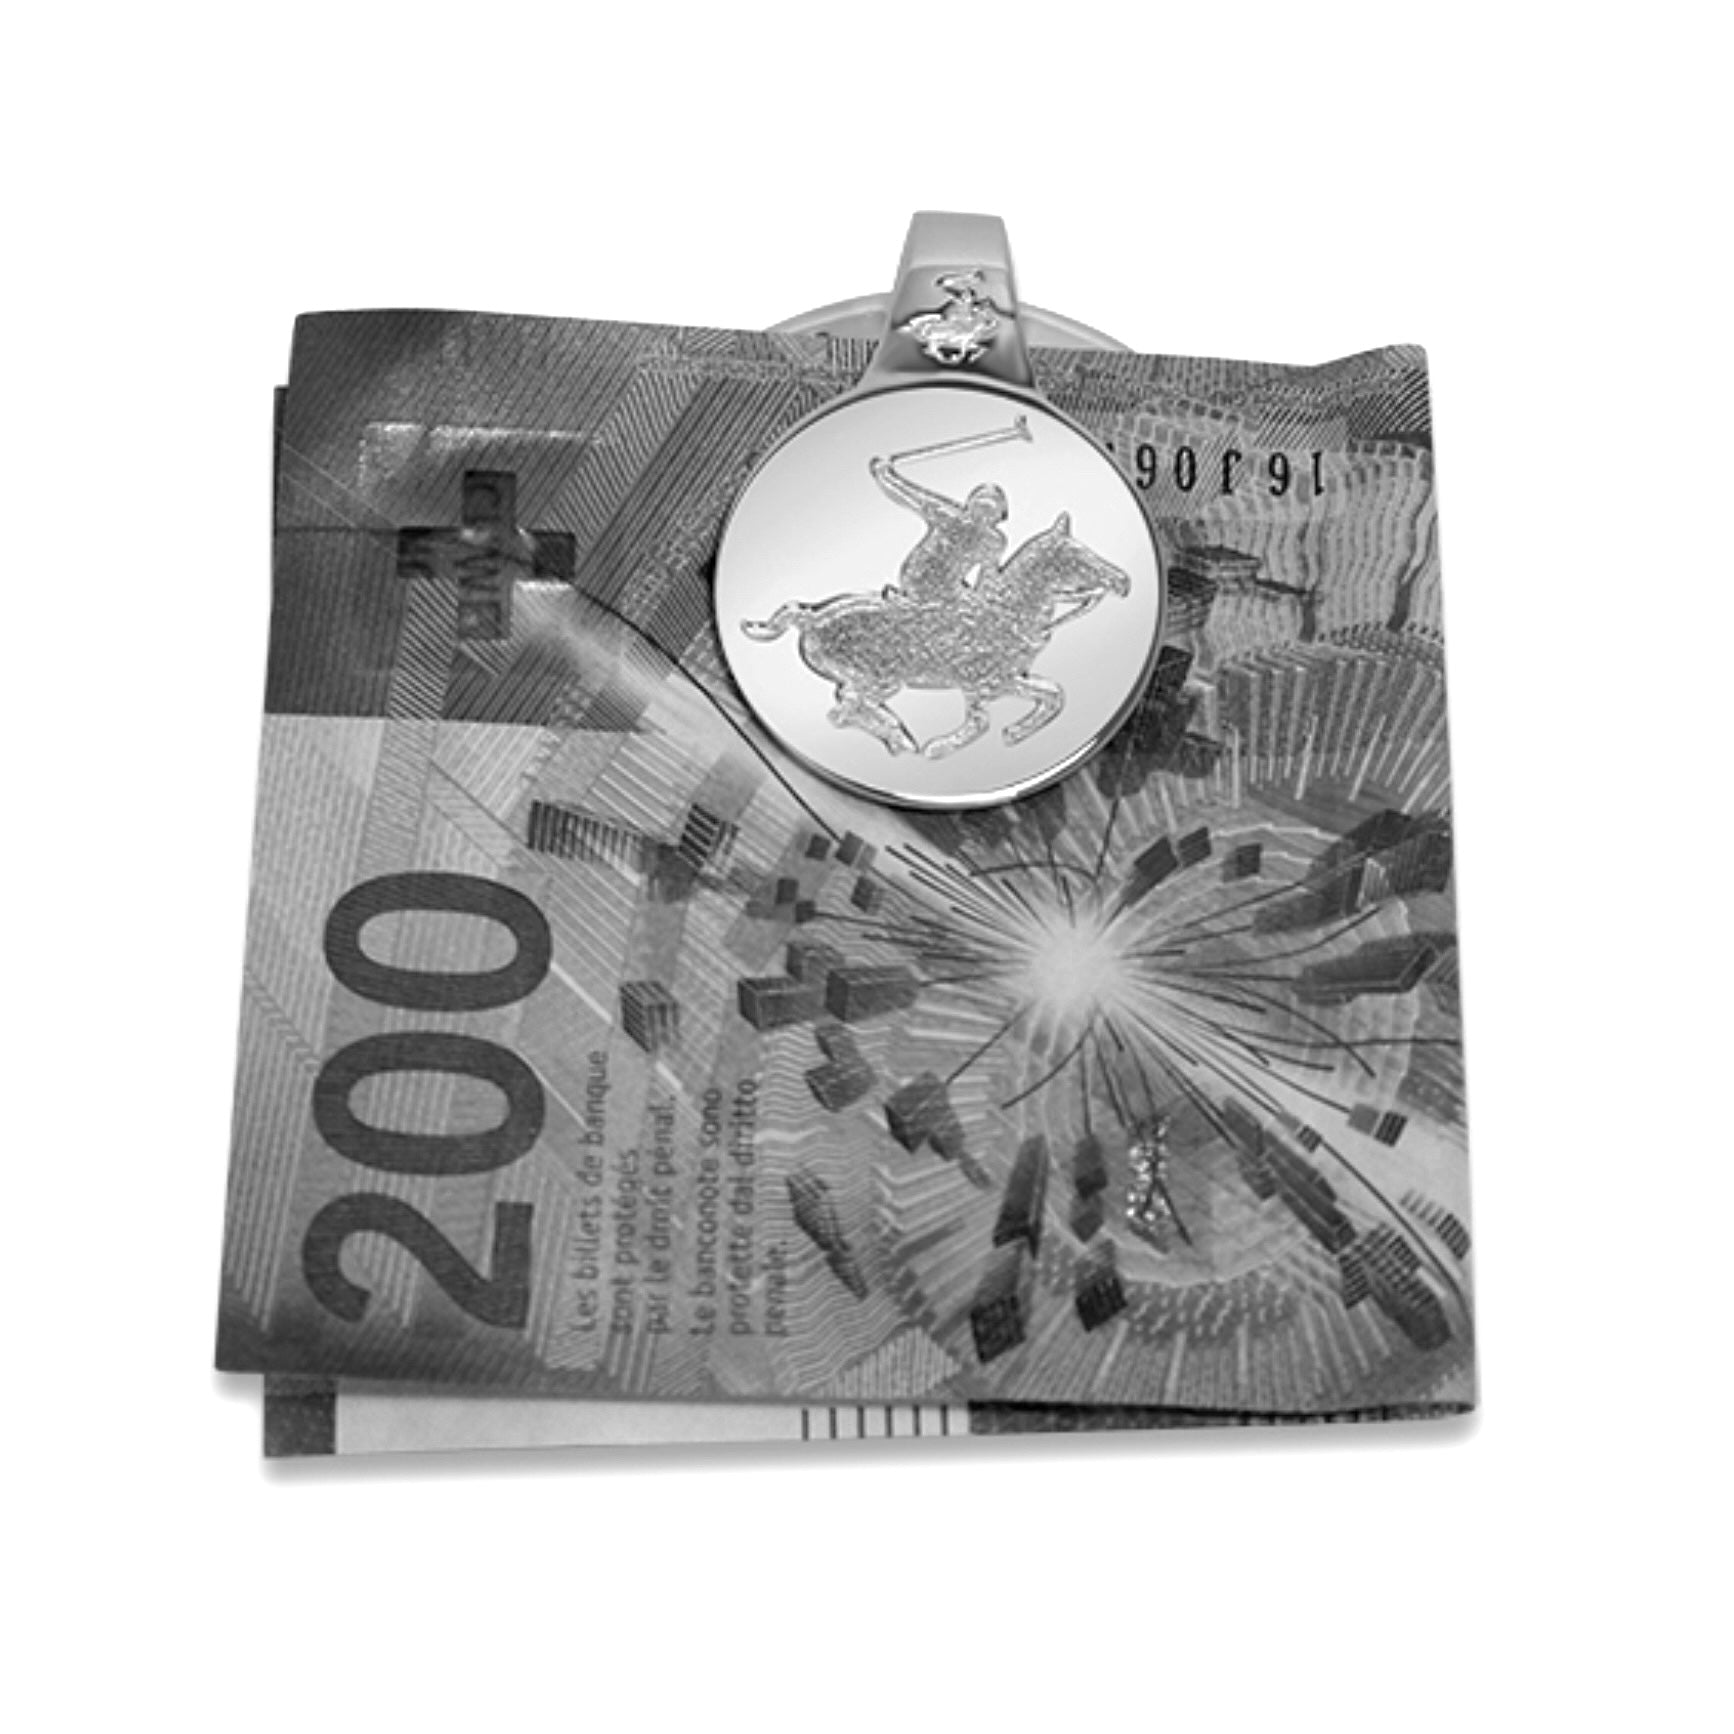 Lesunja Money Clip St. Moritz Polo Silver